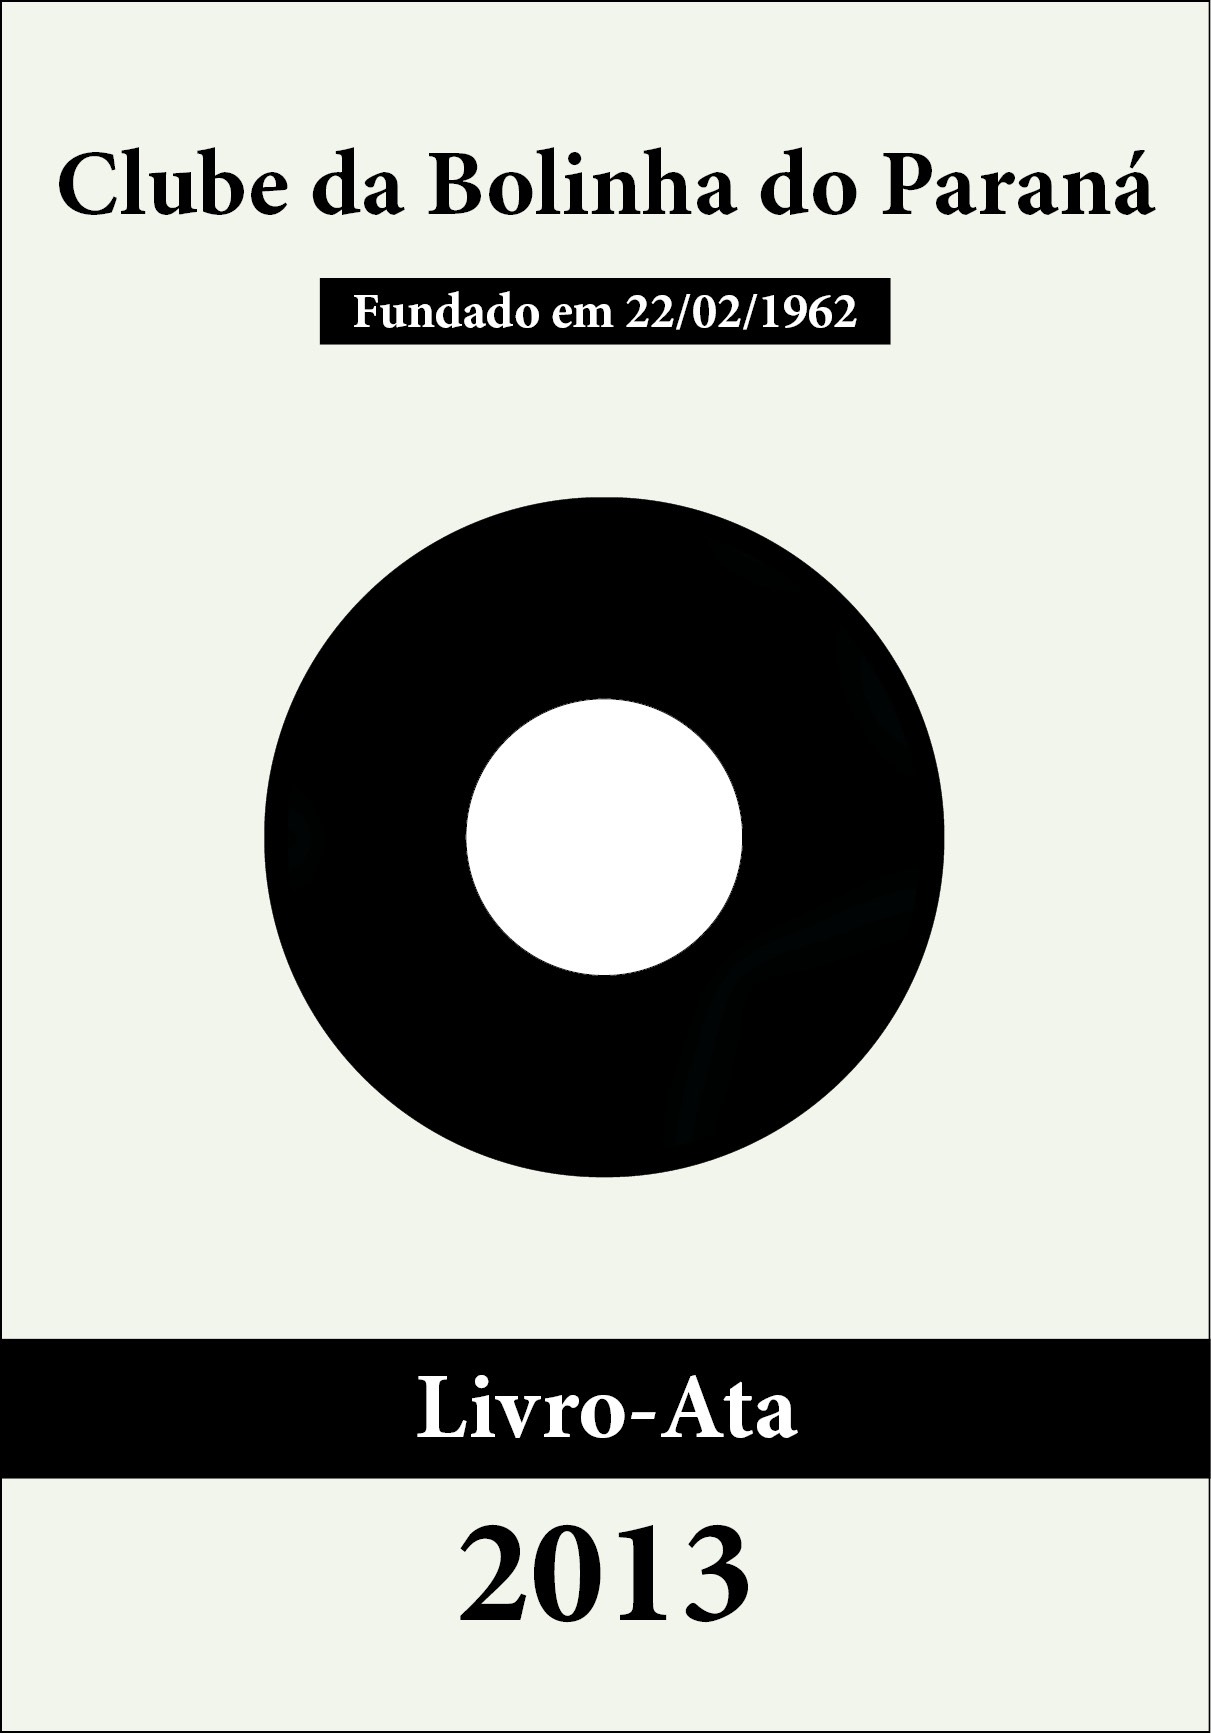 Bolinha - Livro-Ata 2013